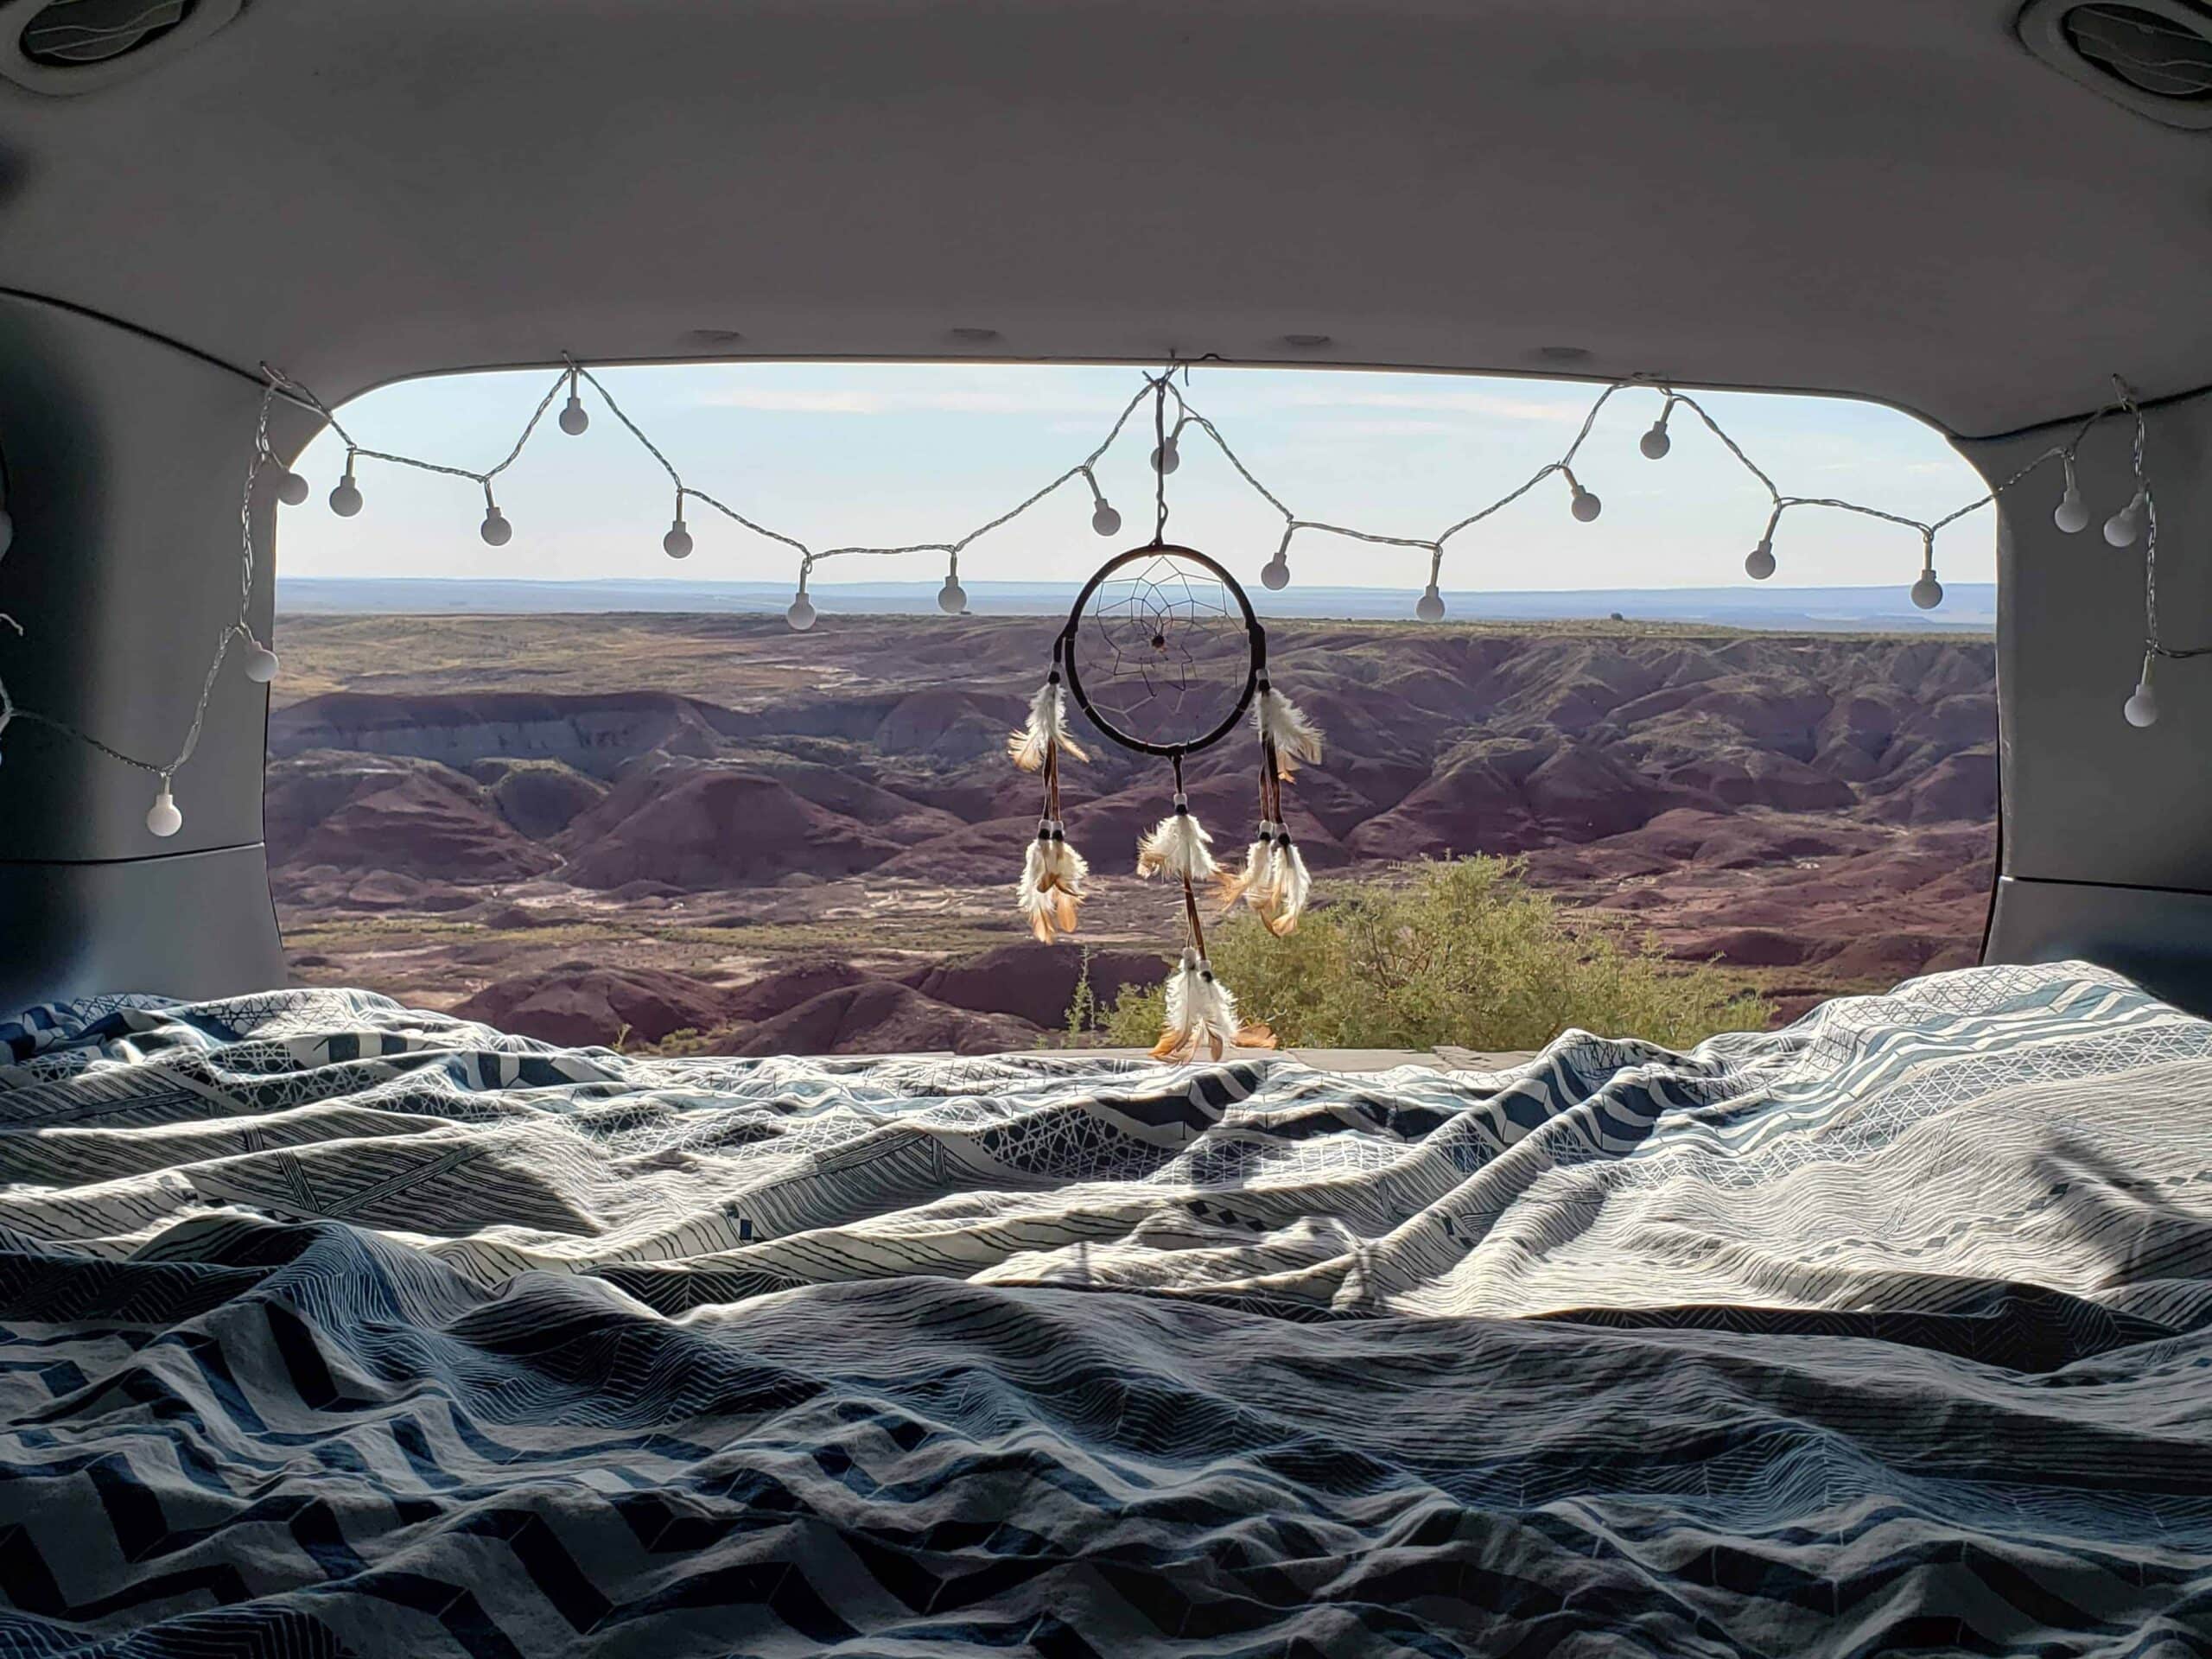 Sicht aus dem Kofferraum eines Autos auf eine Wüste